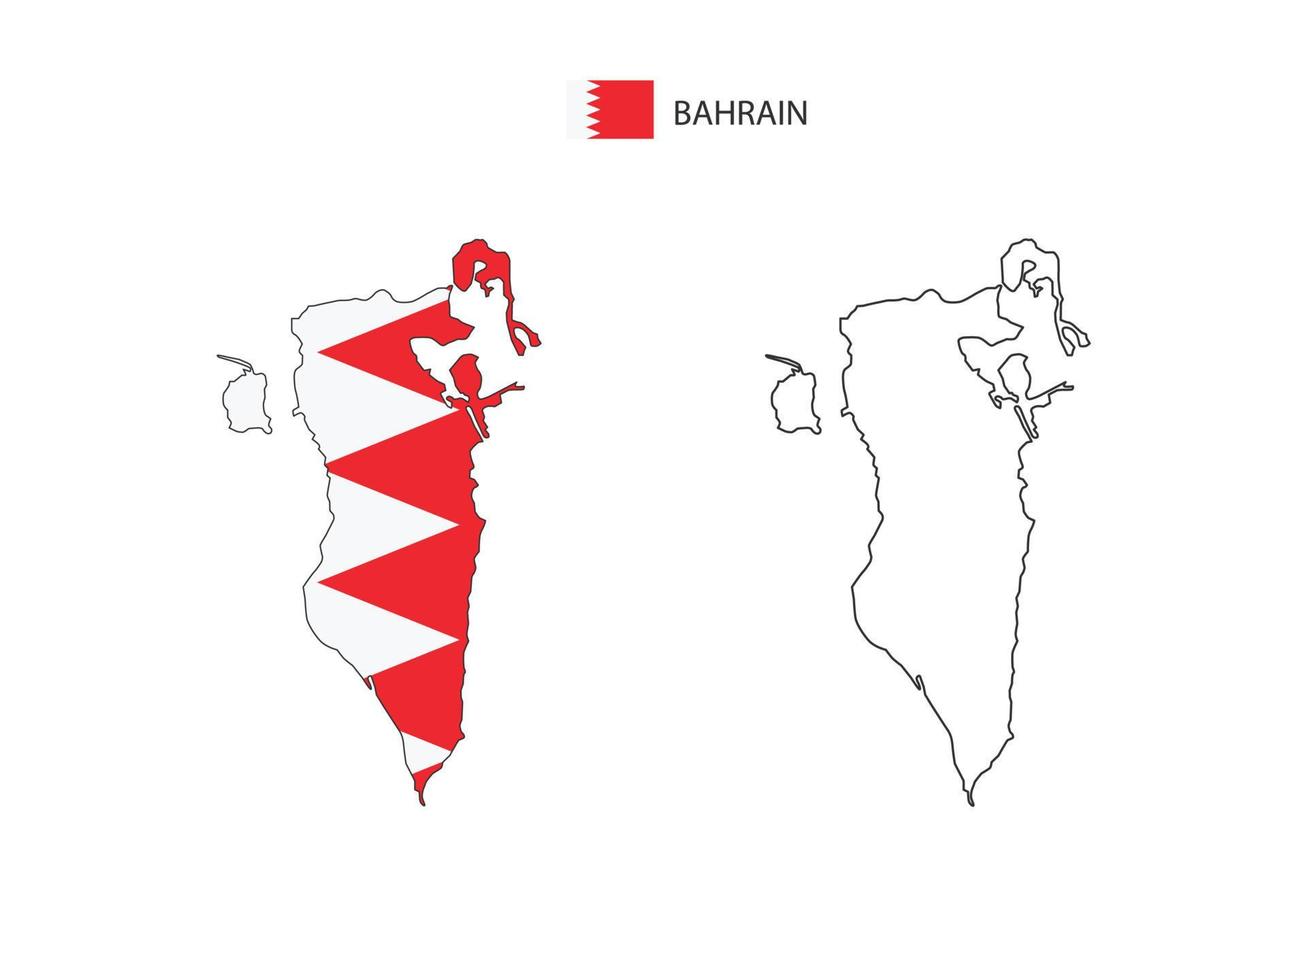 vector de ciudad de mapa de bahrein dividido por estilo de simplicidad de contorno. tiene 2 versiones, versión de línea delgada negra y versión de color de bandera de país. ambos mapas estaban en el fondo blanco.